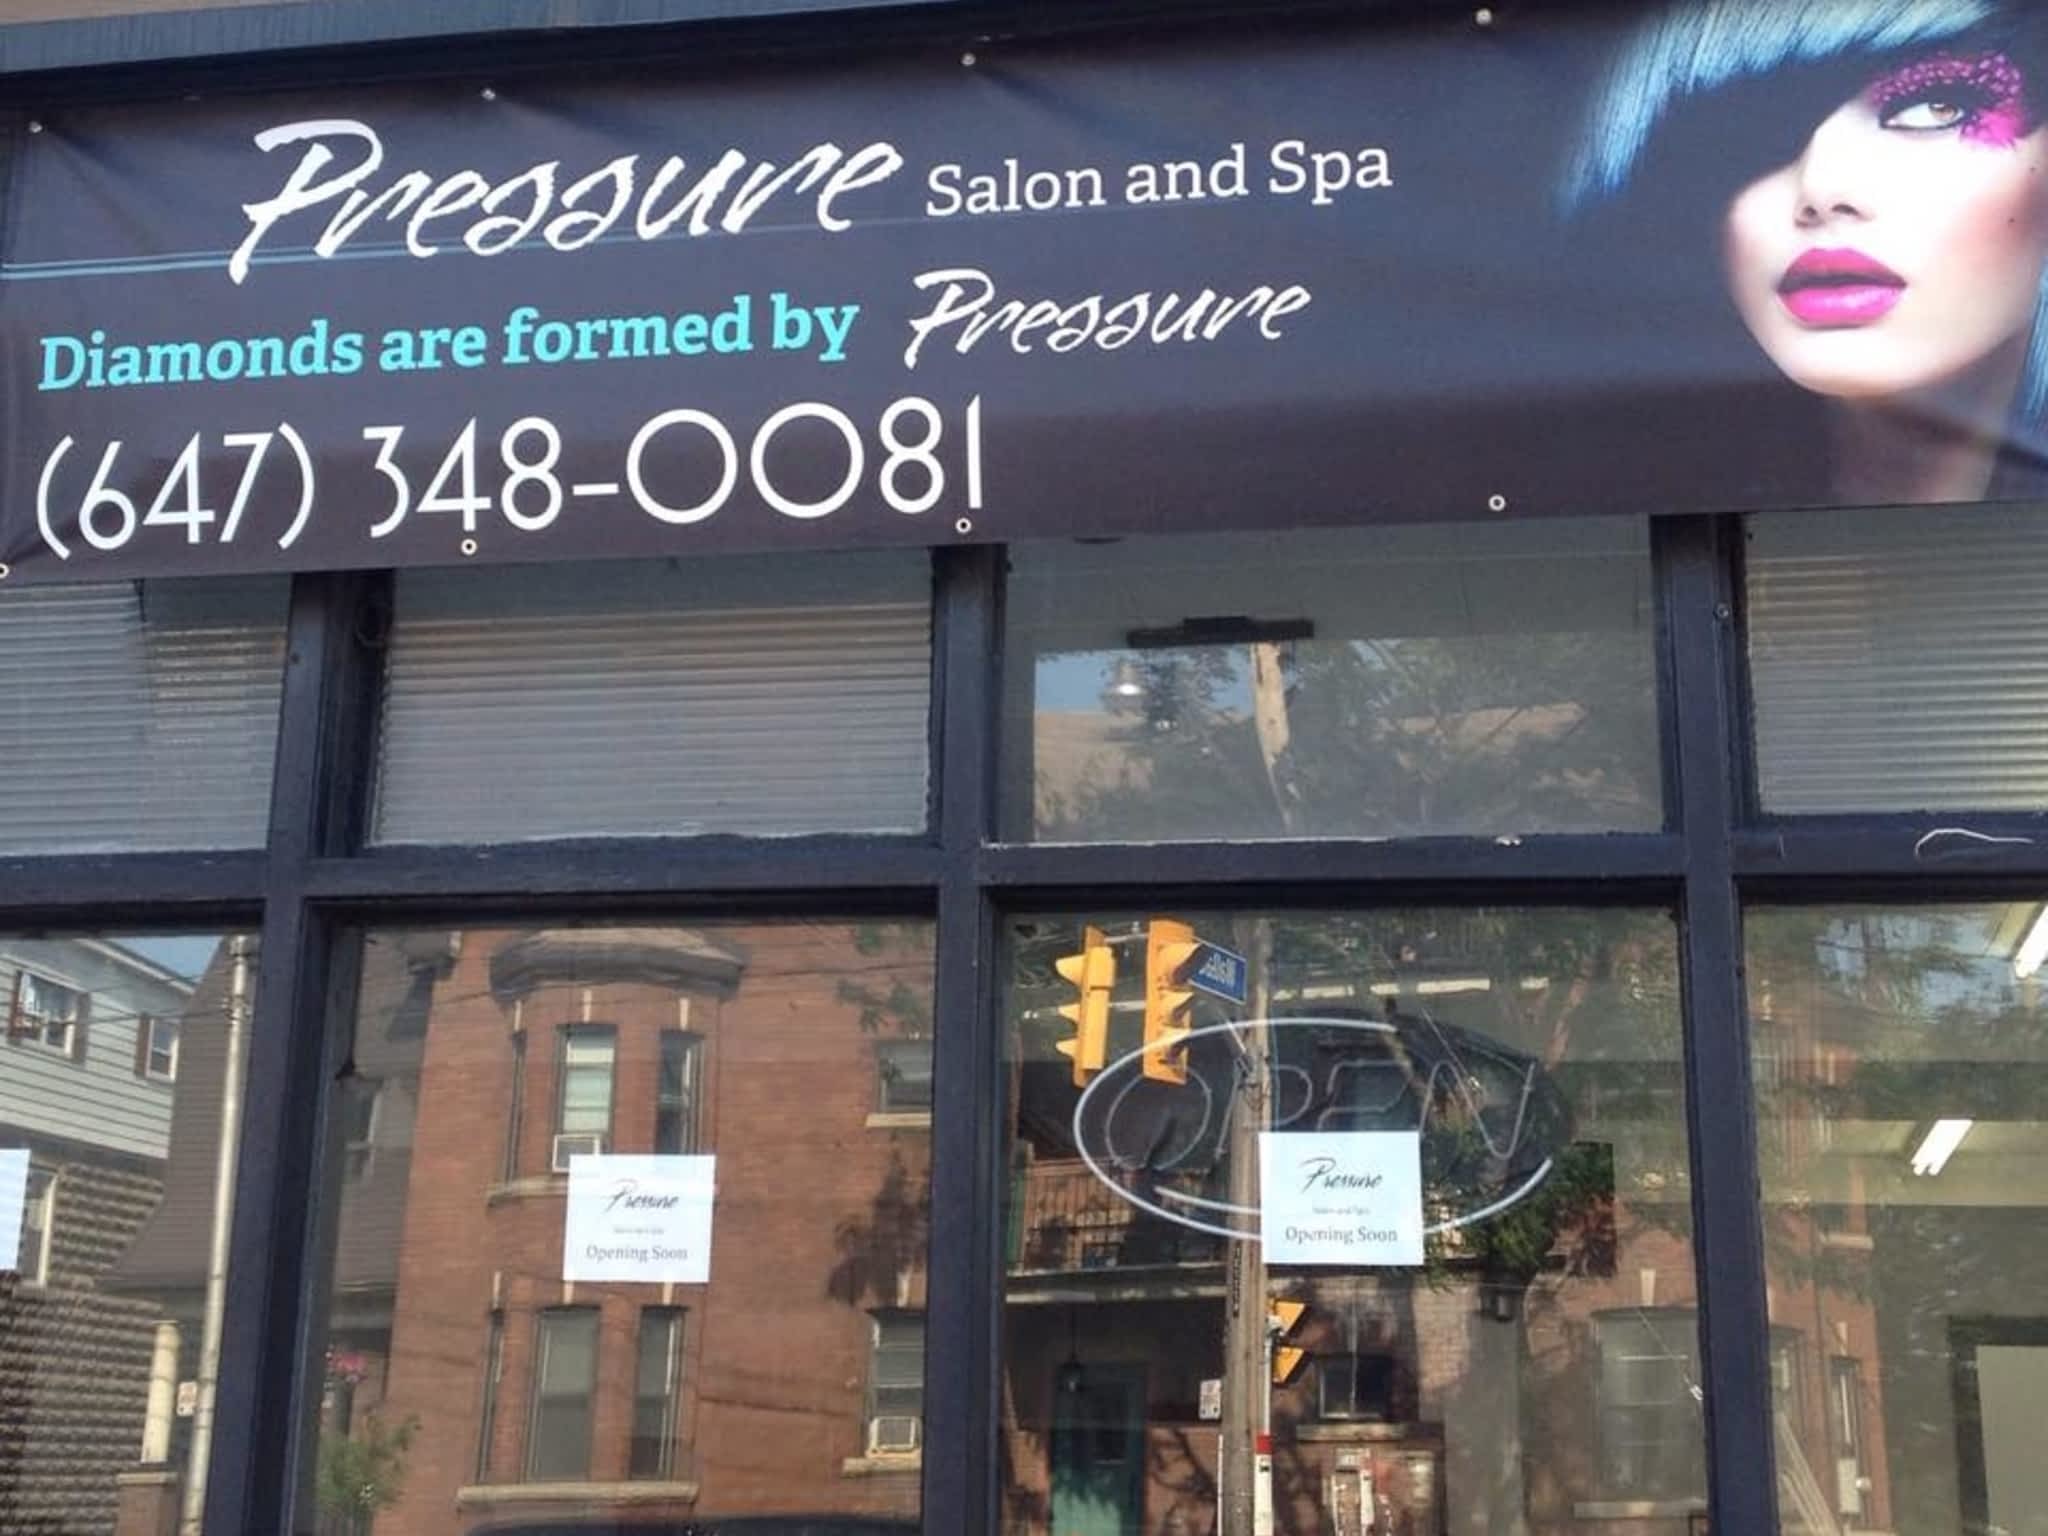 photo Pressure Salon Spa Inc